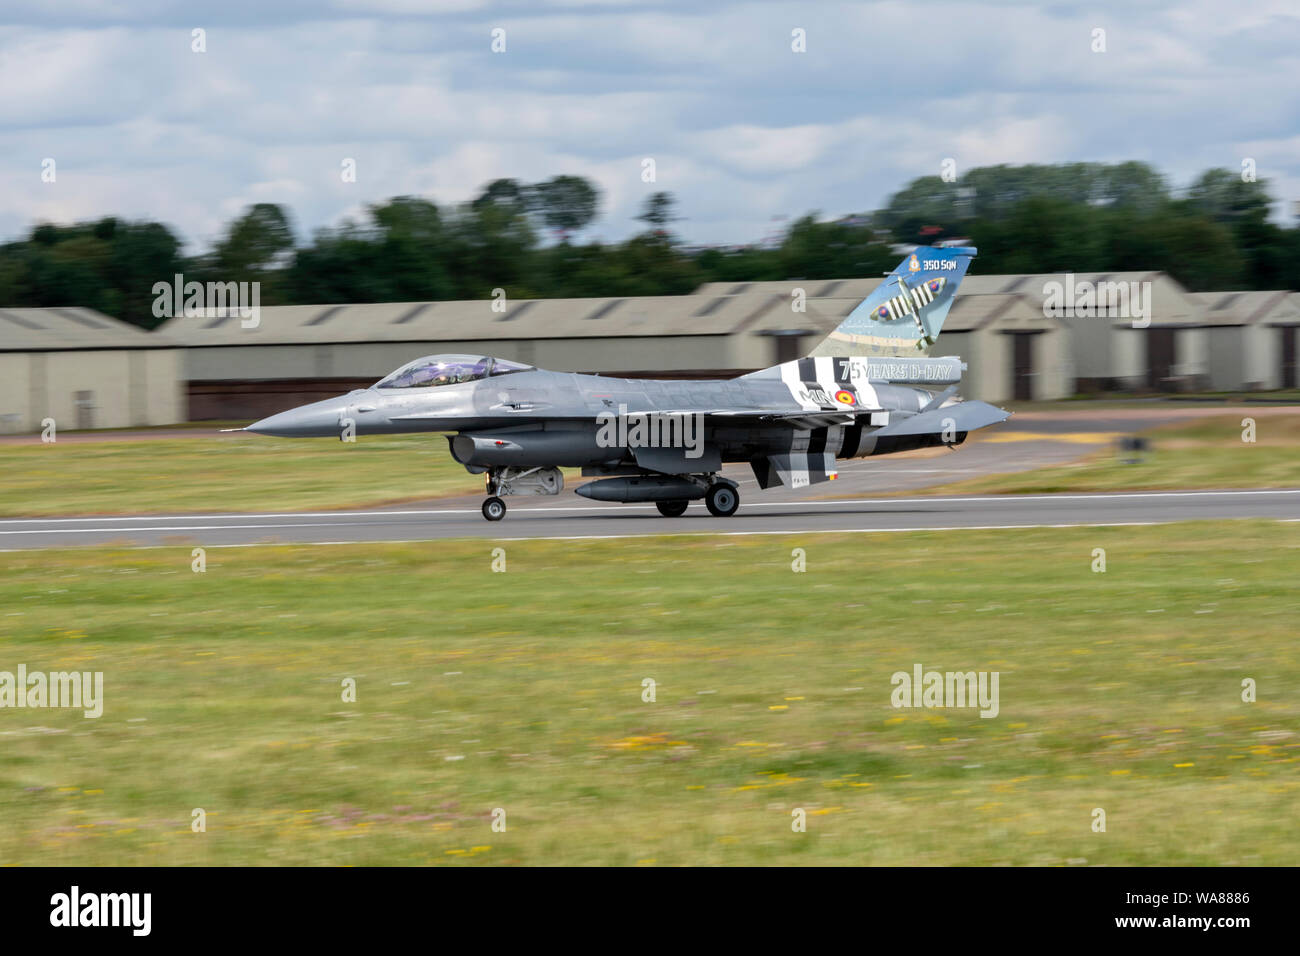 F-16 En vedette dans Airfraft le défilé aérien de l'OTAN 70e anniversaire du Royal International Air Tattoo 2019 à partir de la 2e escadre de la composante aérienne belge ; ; Kleine Brog Banque D'Images